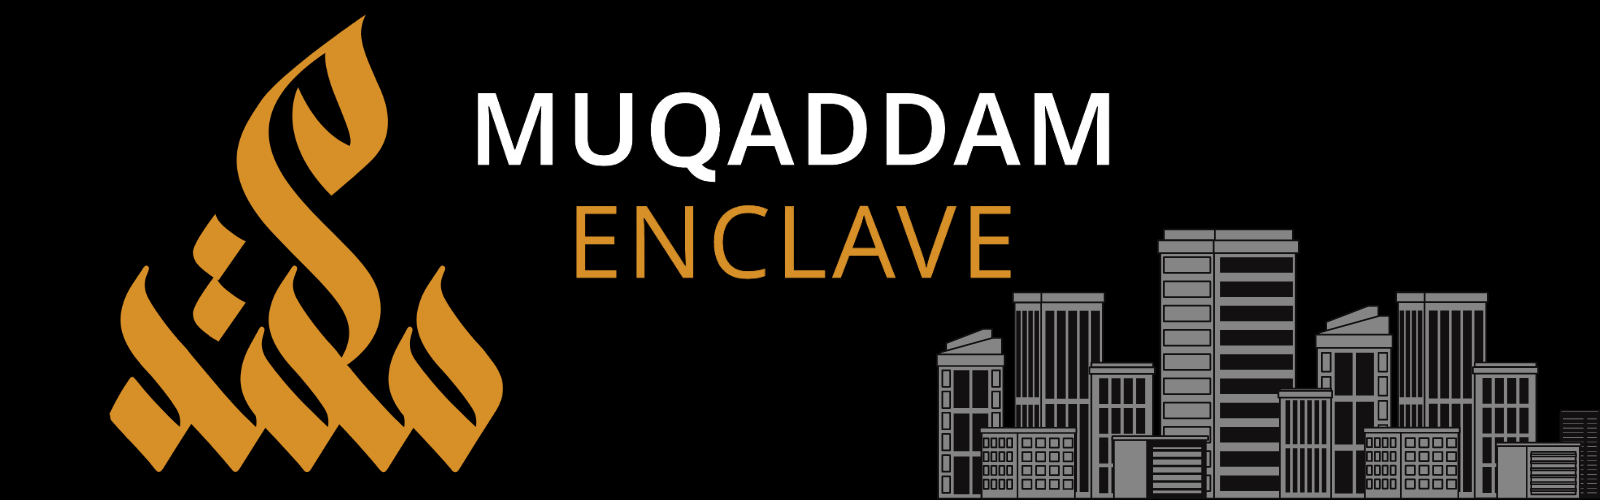 Muqadam Enclave